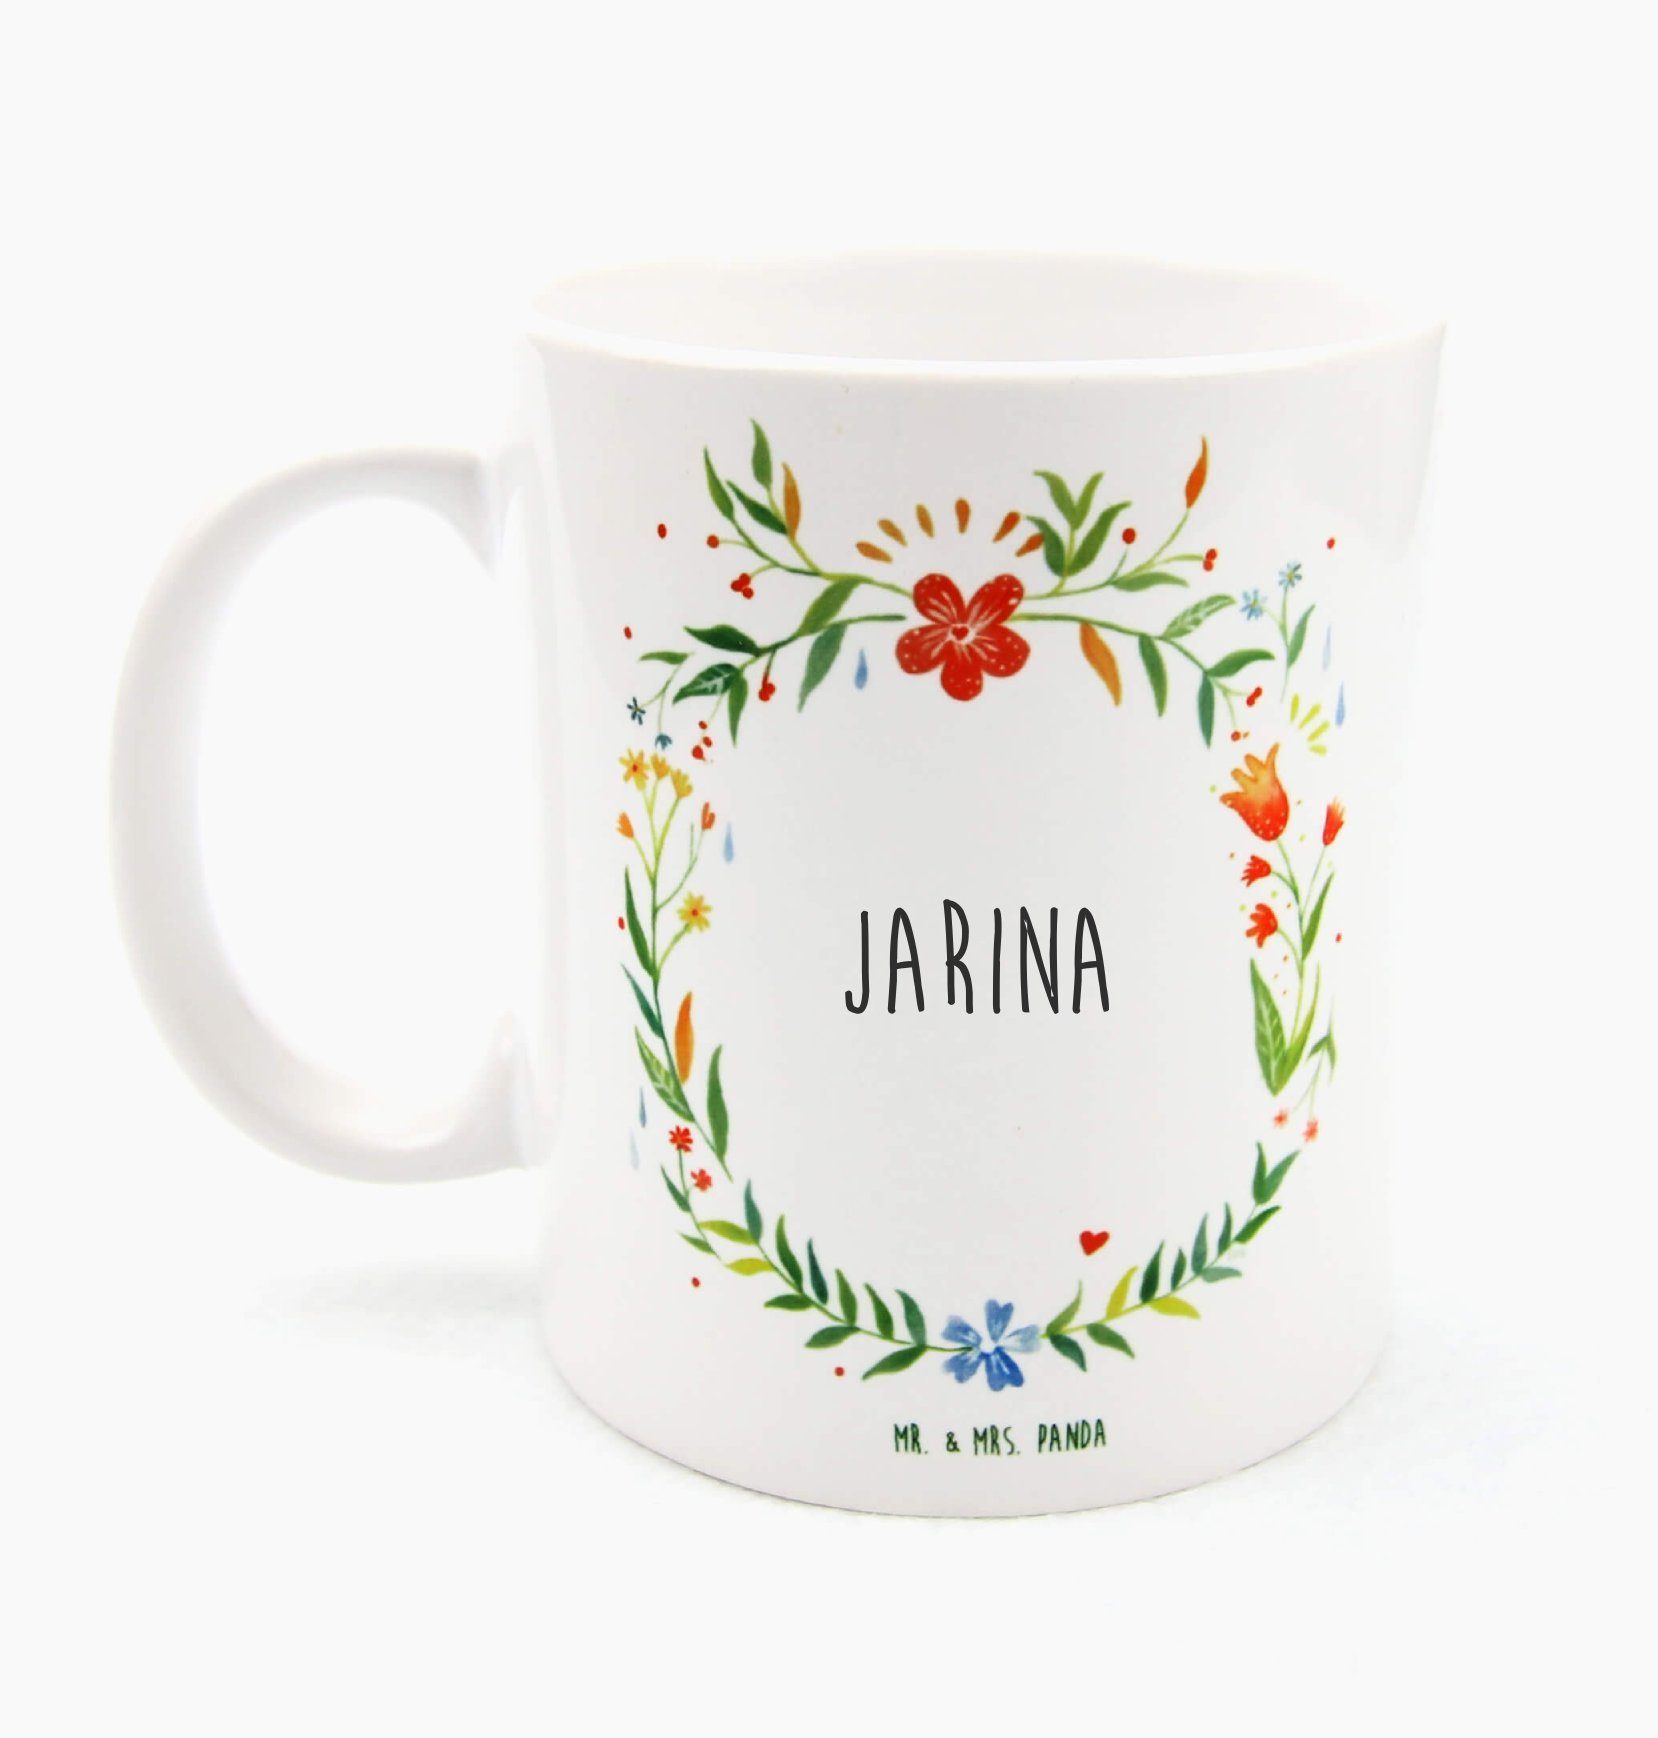 Mr. & Mrs. Panda Tasse Jarina - Geschenk, Büro Tasse, Geschenk Tasse, Kaffeebecher, Kaffeeta, Keramik